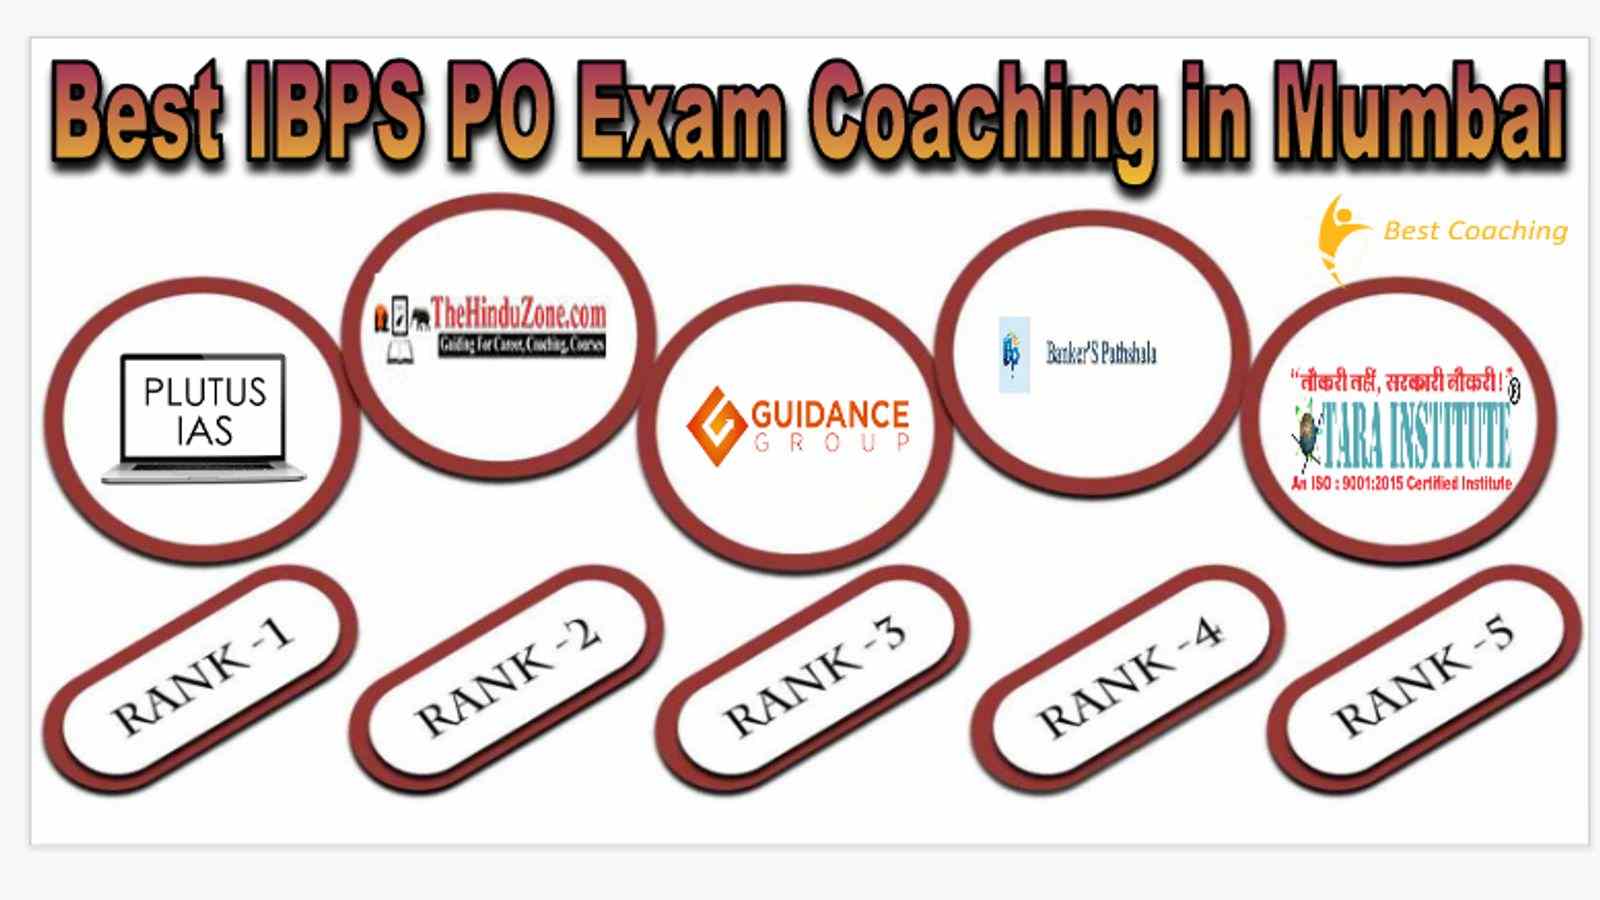 Best IBPS PO Exam Coaching in Mumbai